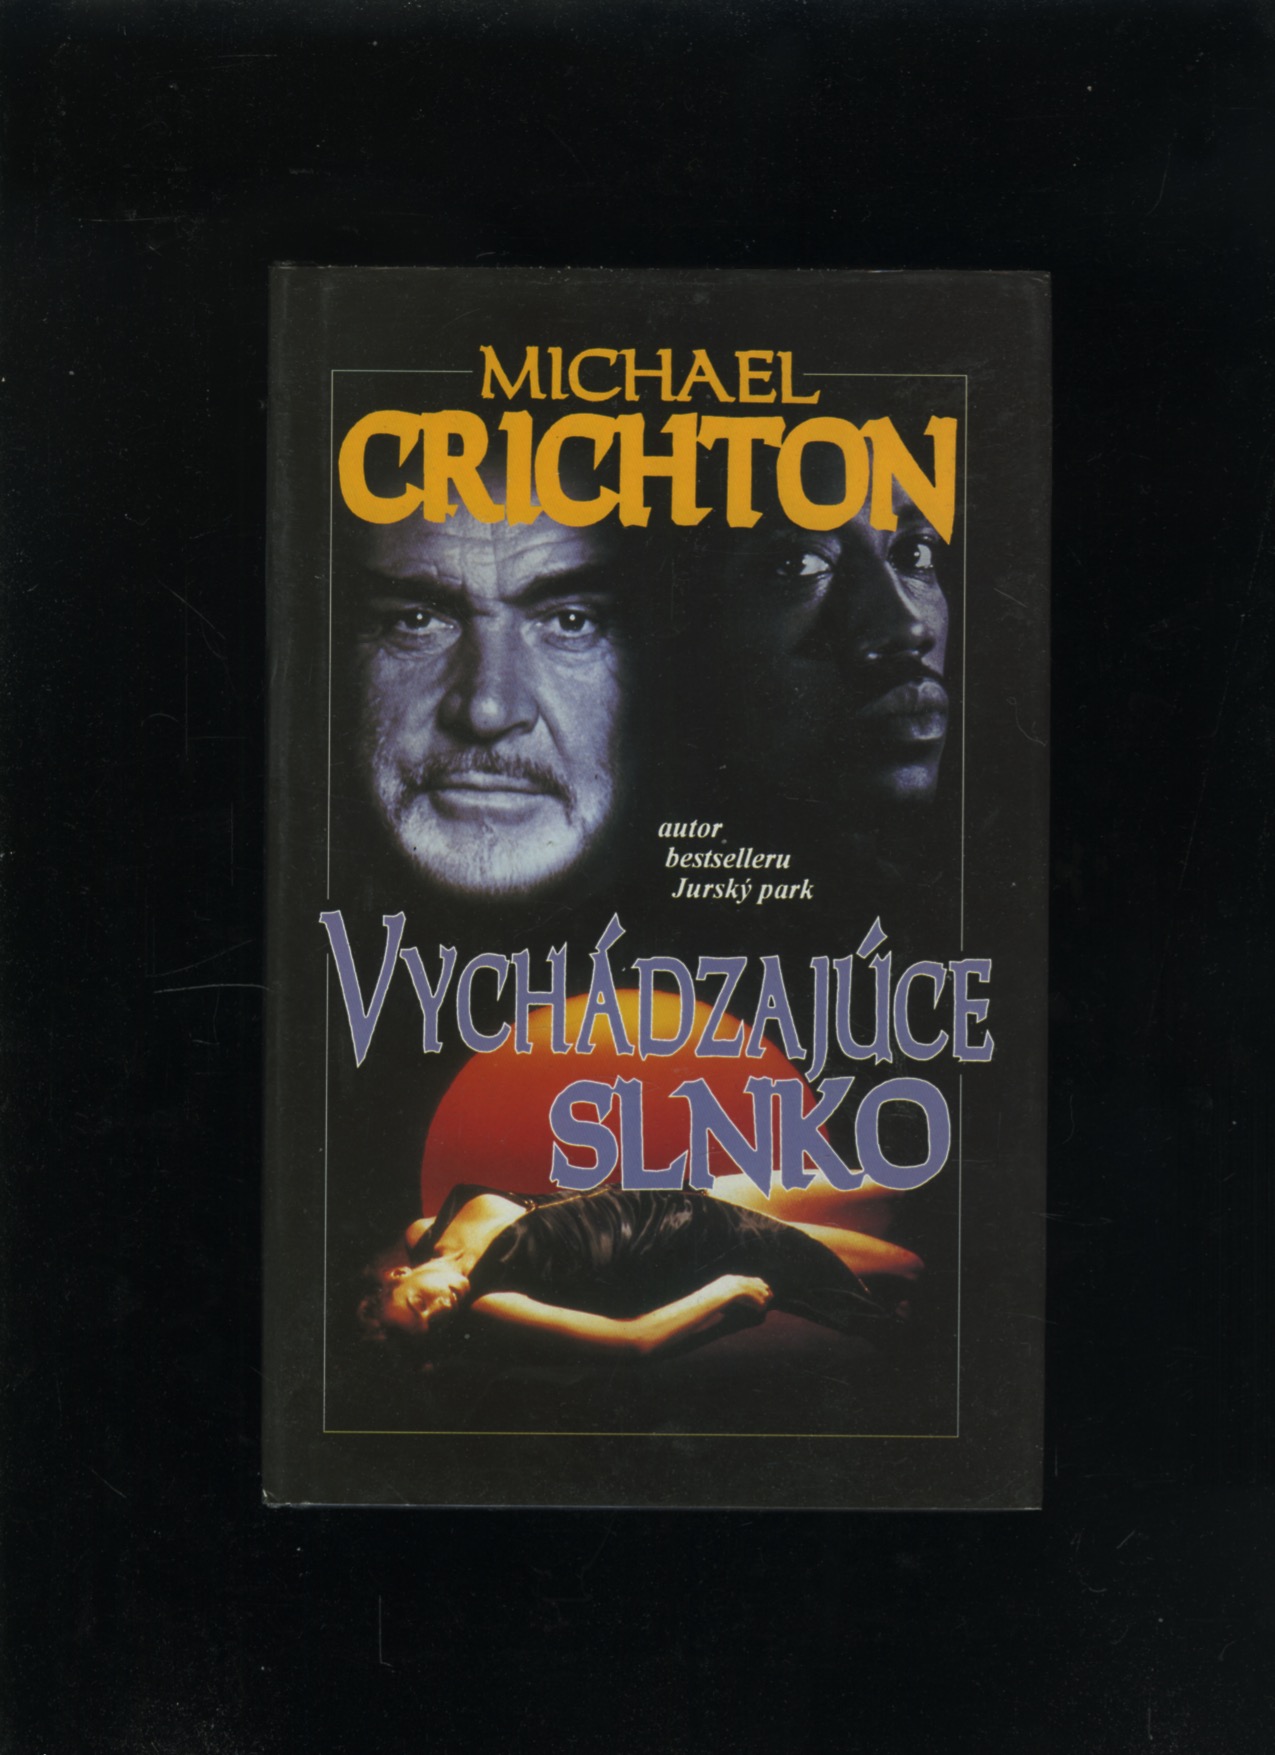 Vychádzajúce slnko (Michael Crichton)